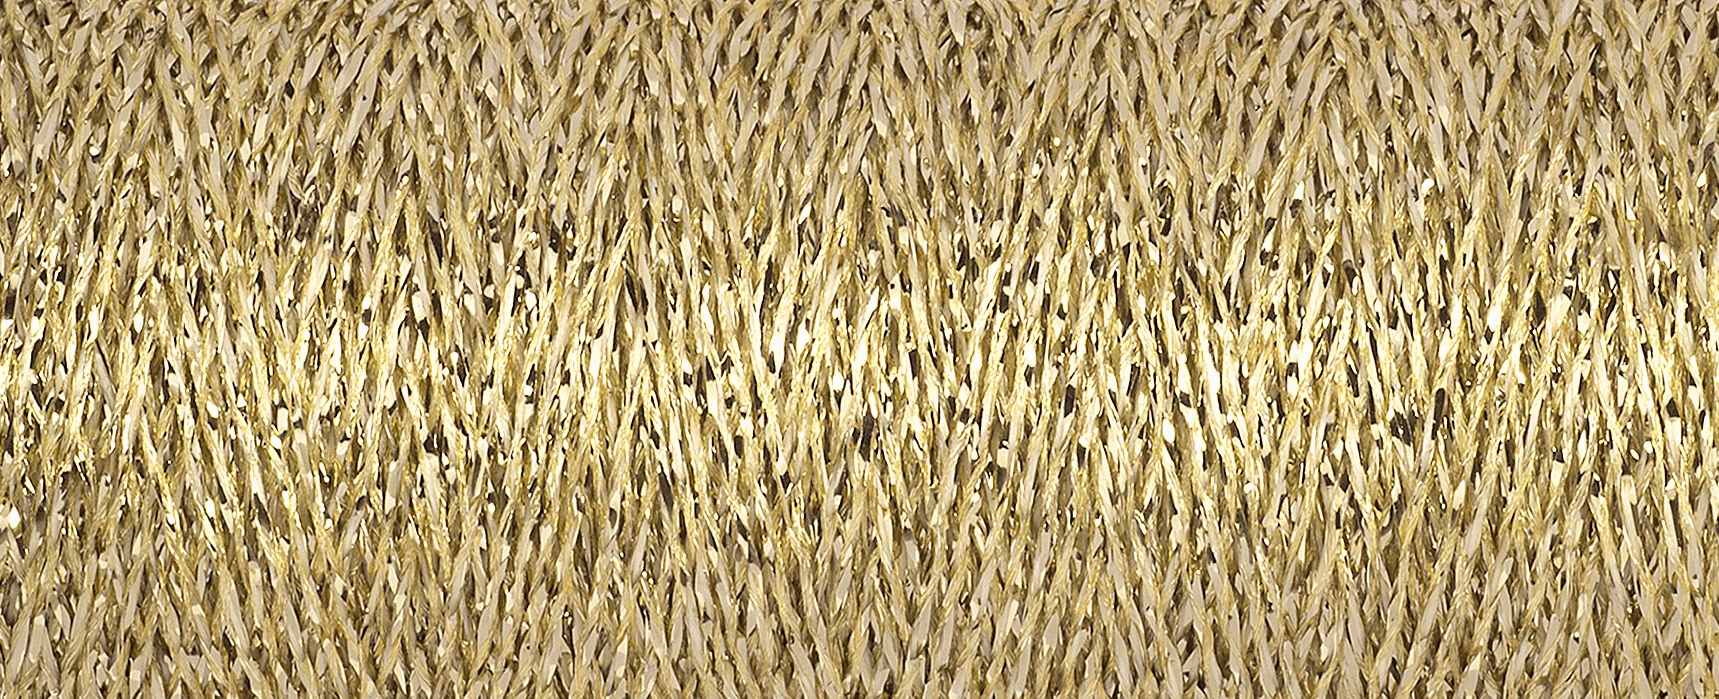 Gutermann Gold Metallic Effect Thread - 50m